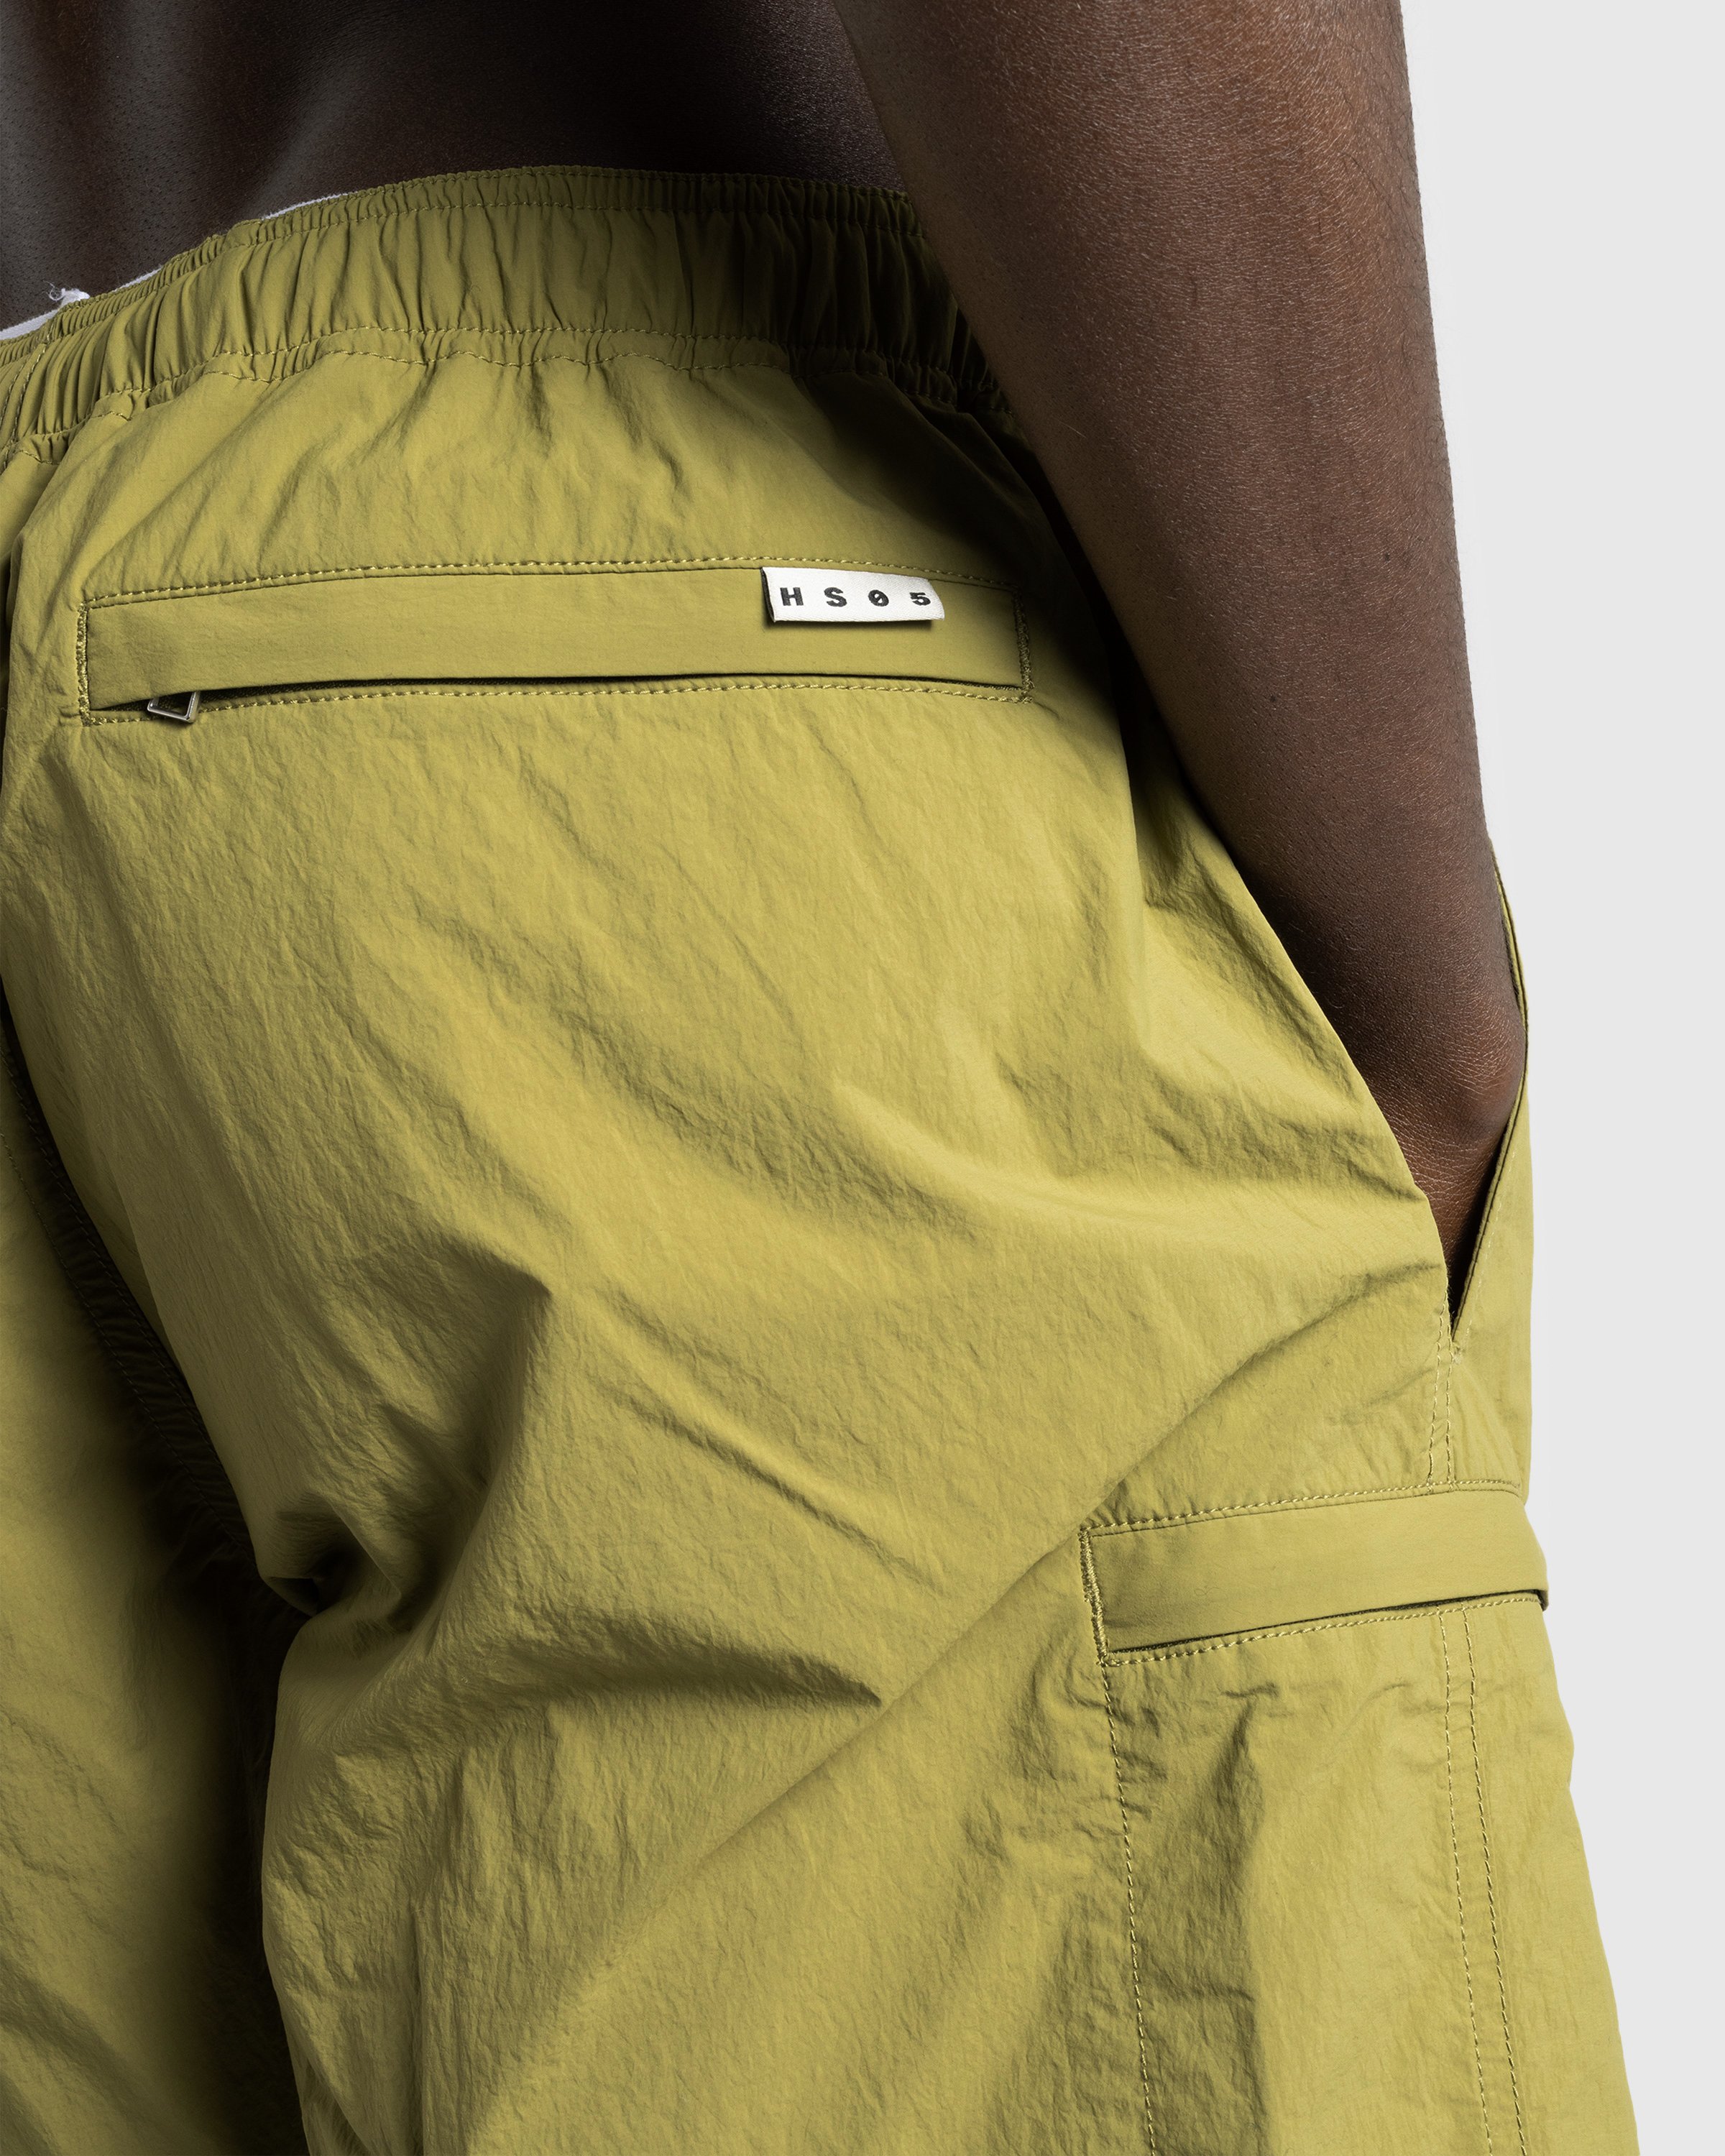 Highsnobiety HS05 - Natural Dyed Nylon Shorts - Clothing - Khaki - Image 8